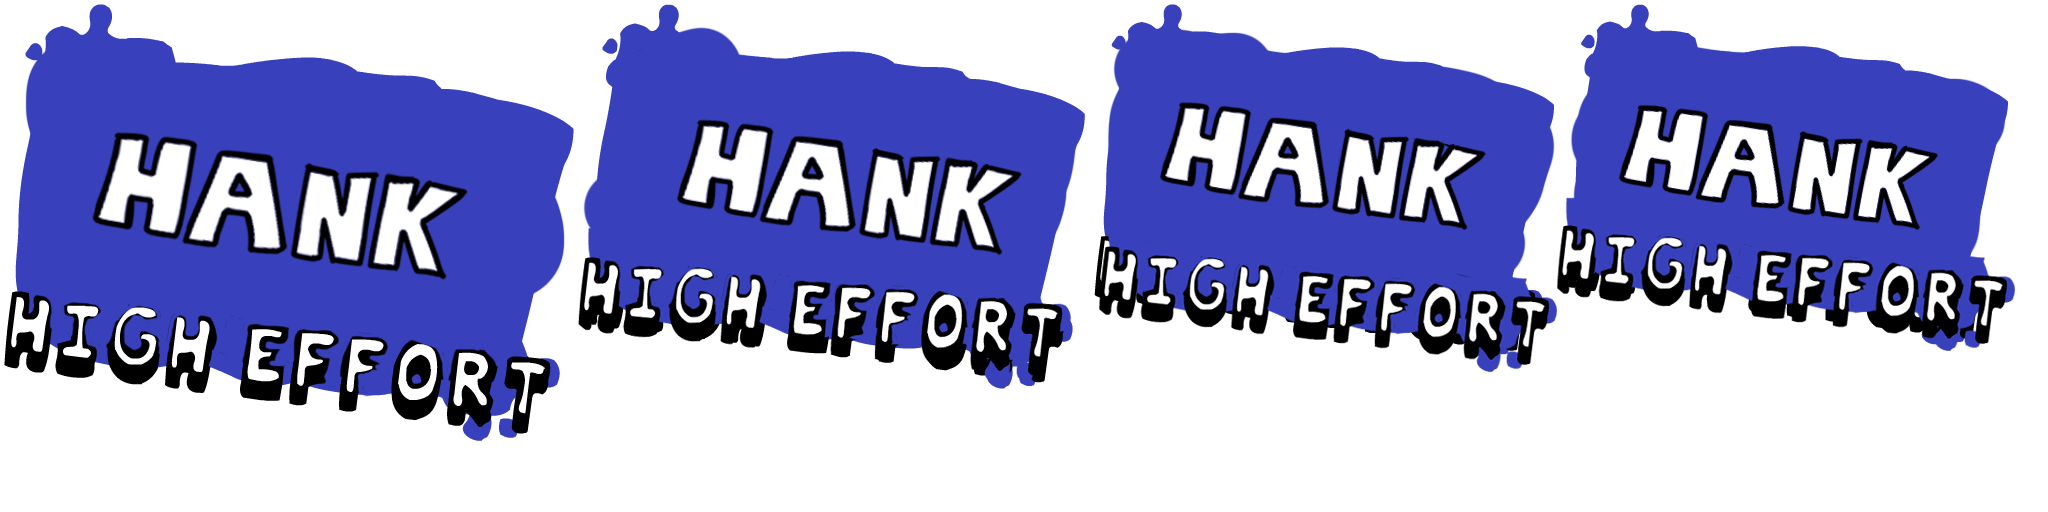 hank high effort (fanmade demo)